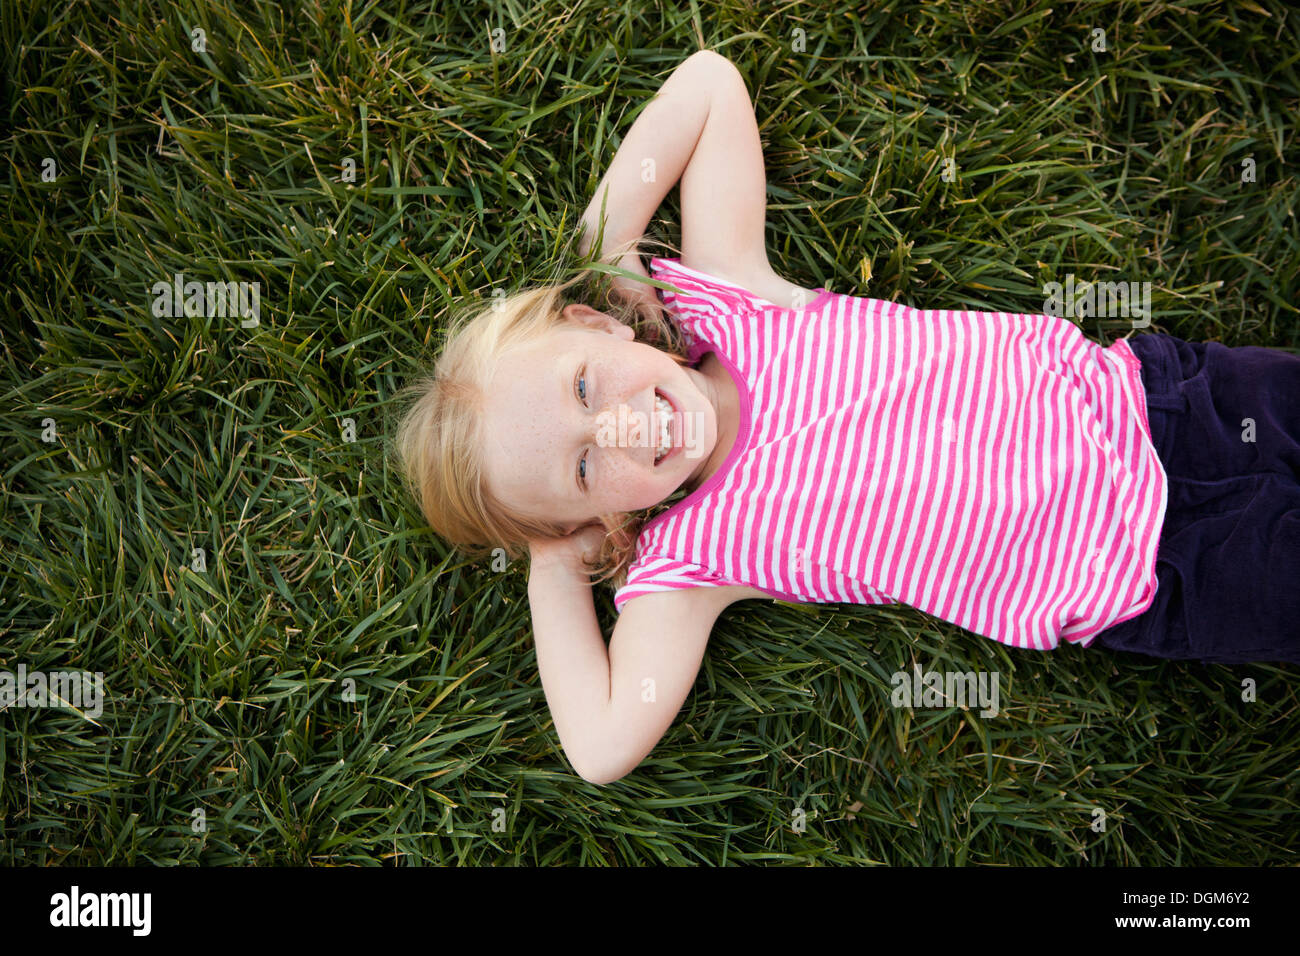 Una giovane ragazza sdraiata su erba le mani dietro la testa sorridente guardando la fotocamera vista da sopra Foto Stock